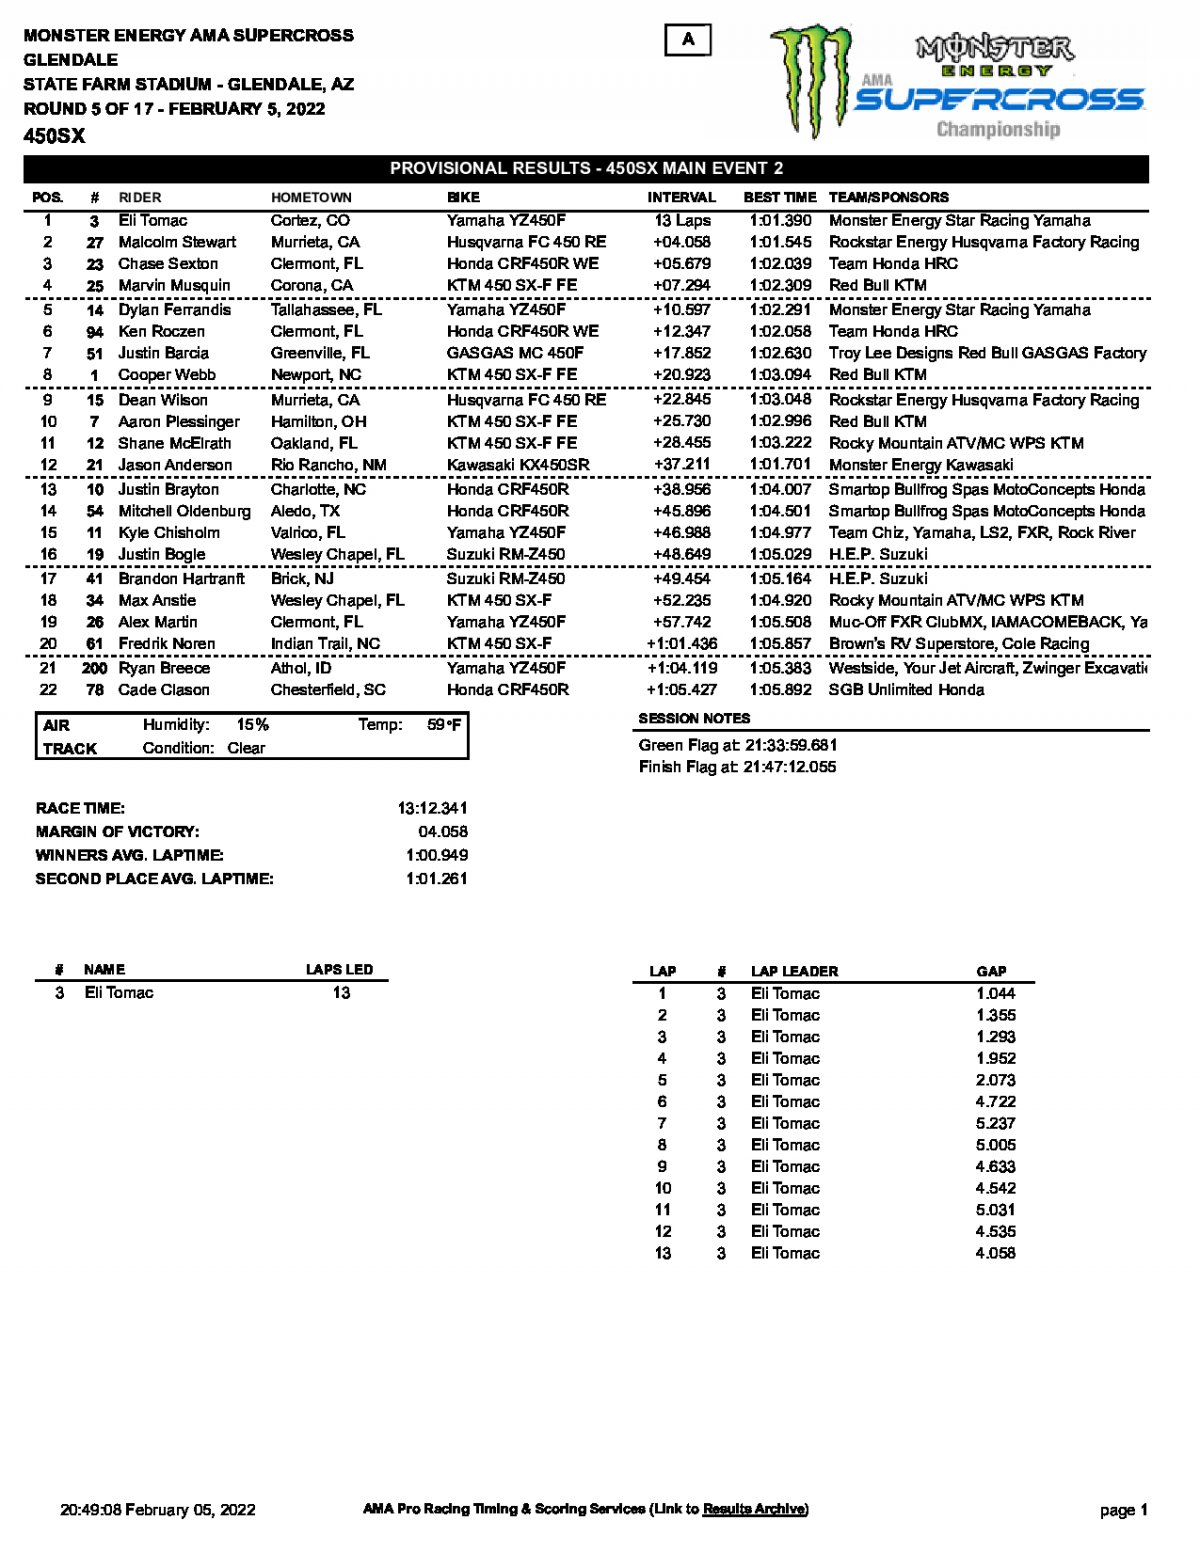 Результаты 2 гонки 5-го этапа AMA Supercross, Glendale (5/02/2022)